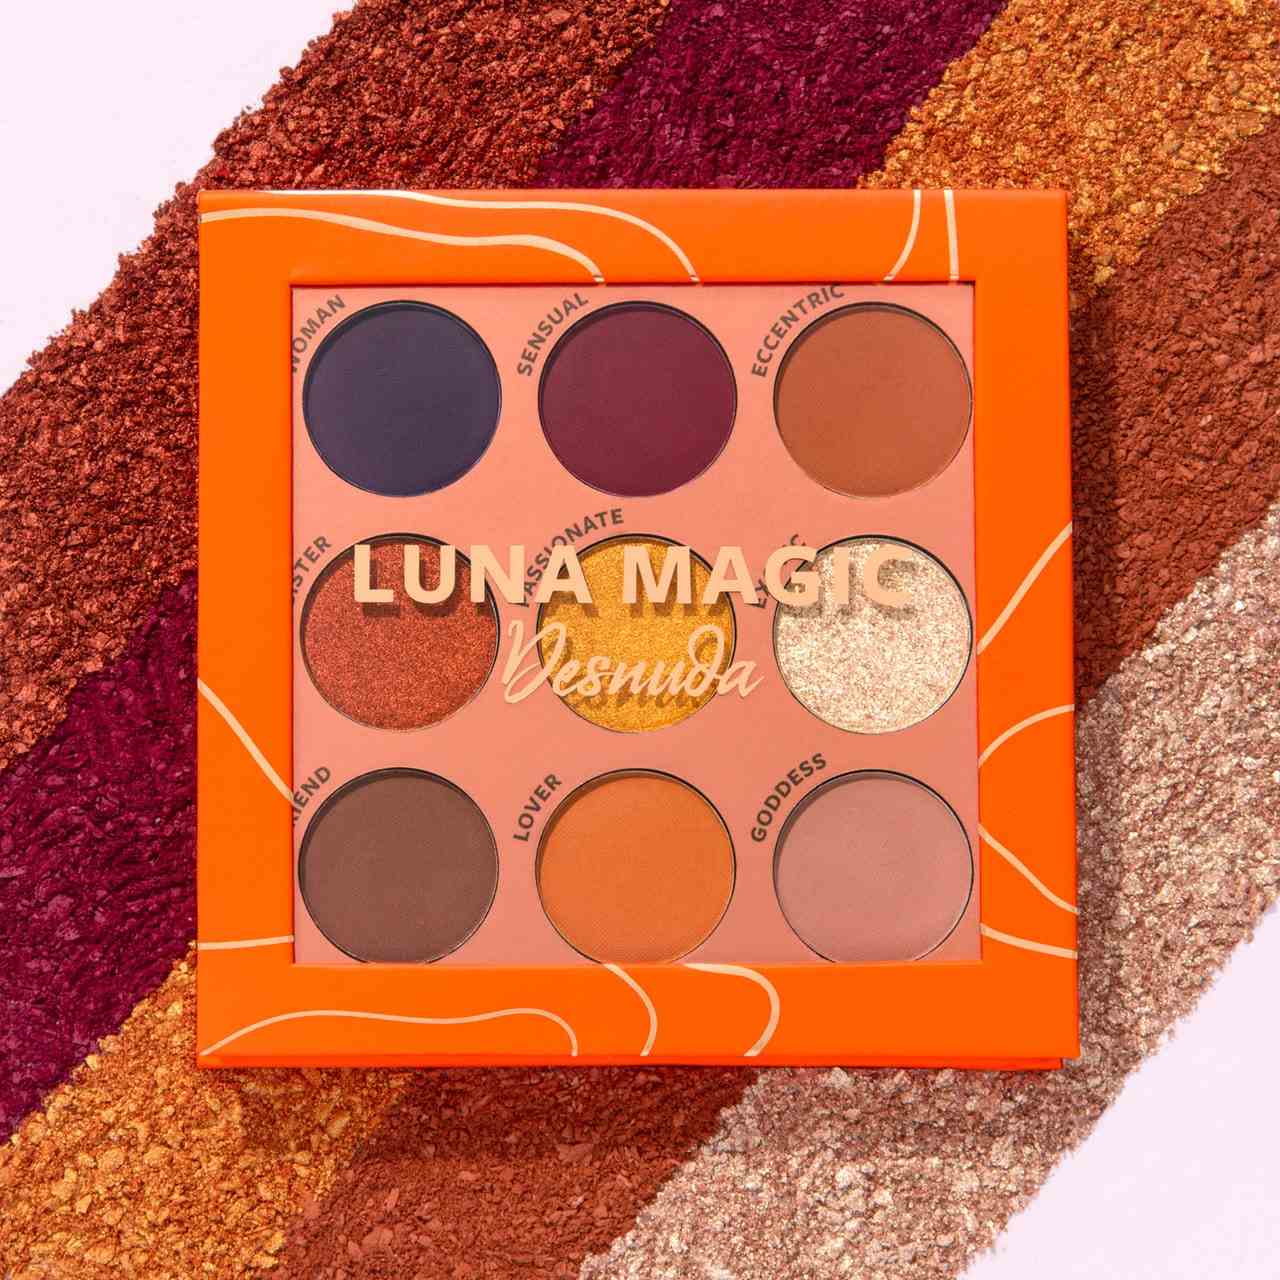 die Luna Magic Desnuda 9 Pan Lidschatten-Palette mit matten und schimmernden Braun-, Orange-, Lila- und Schwarztönen